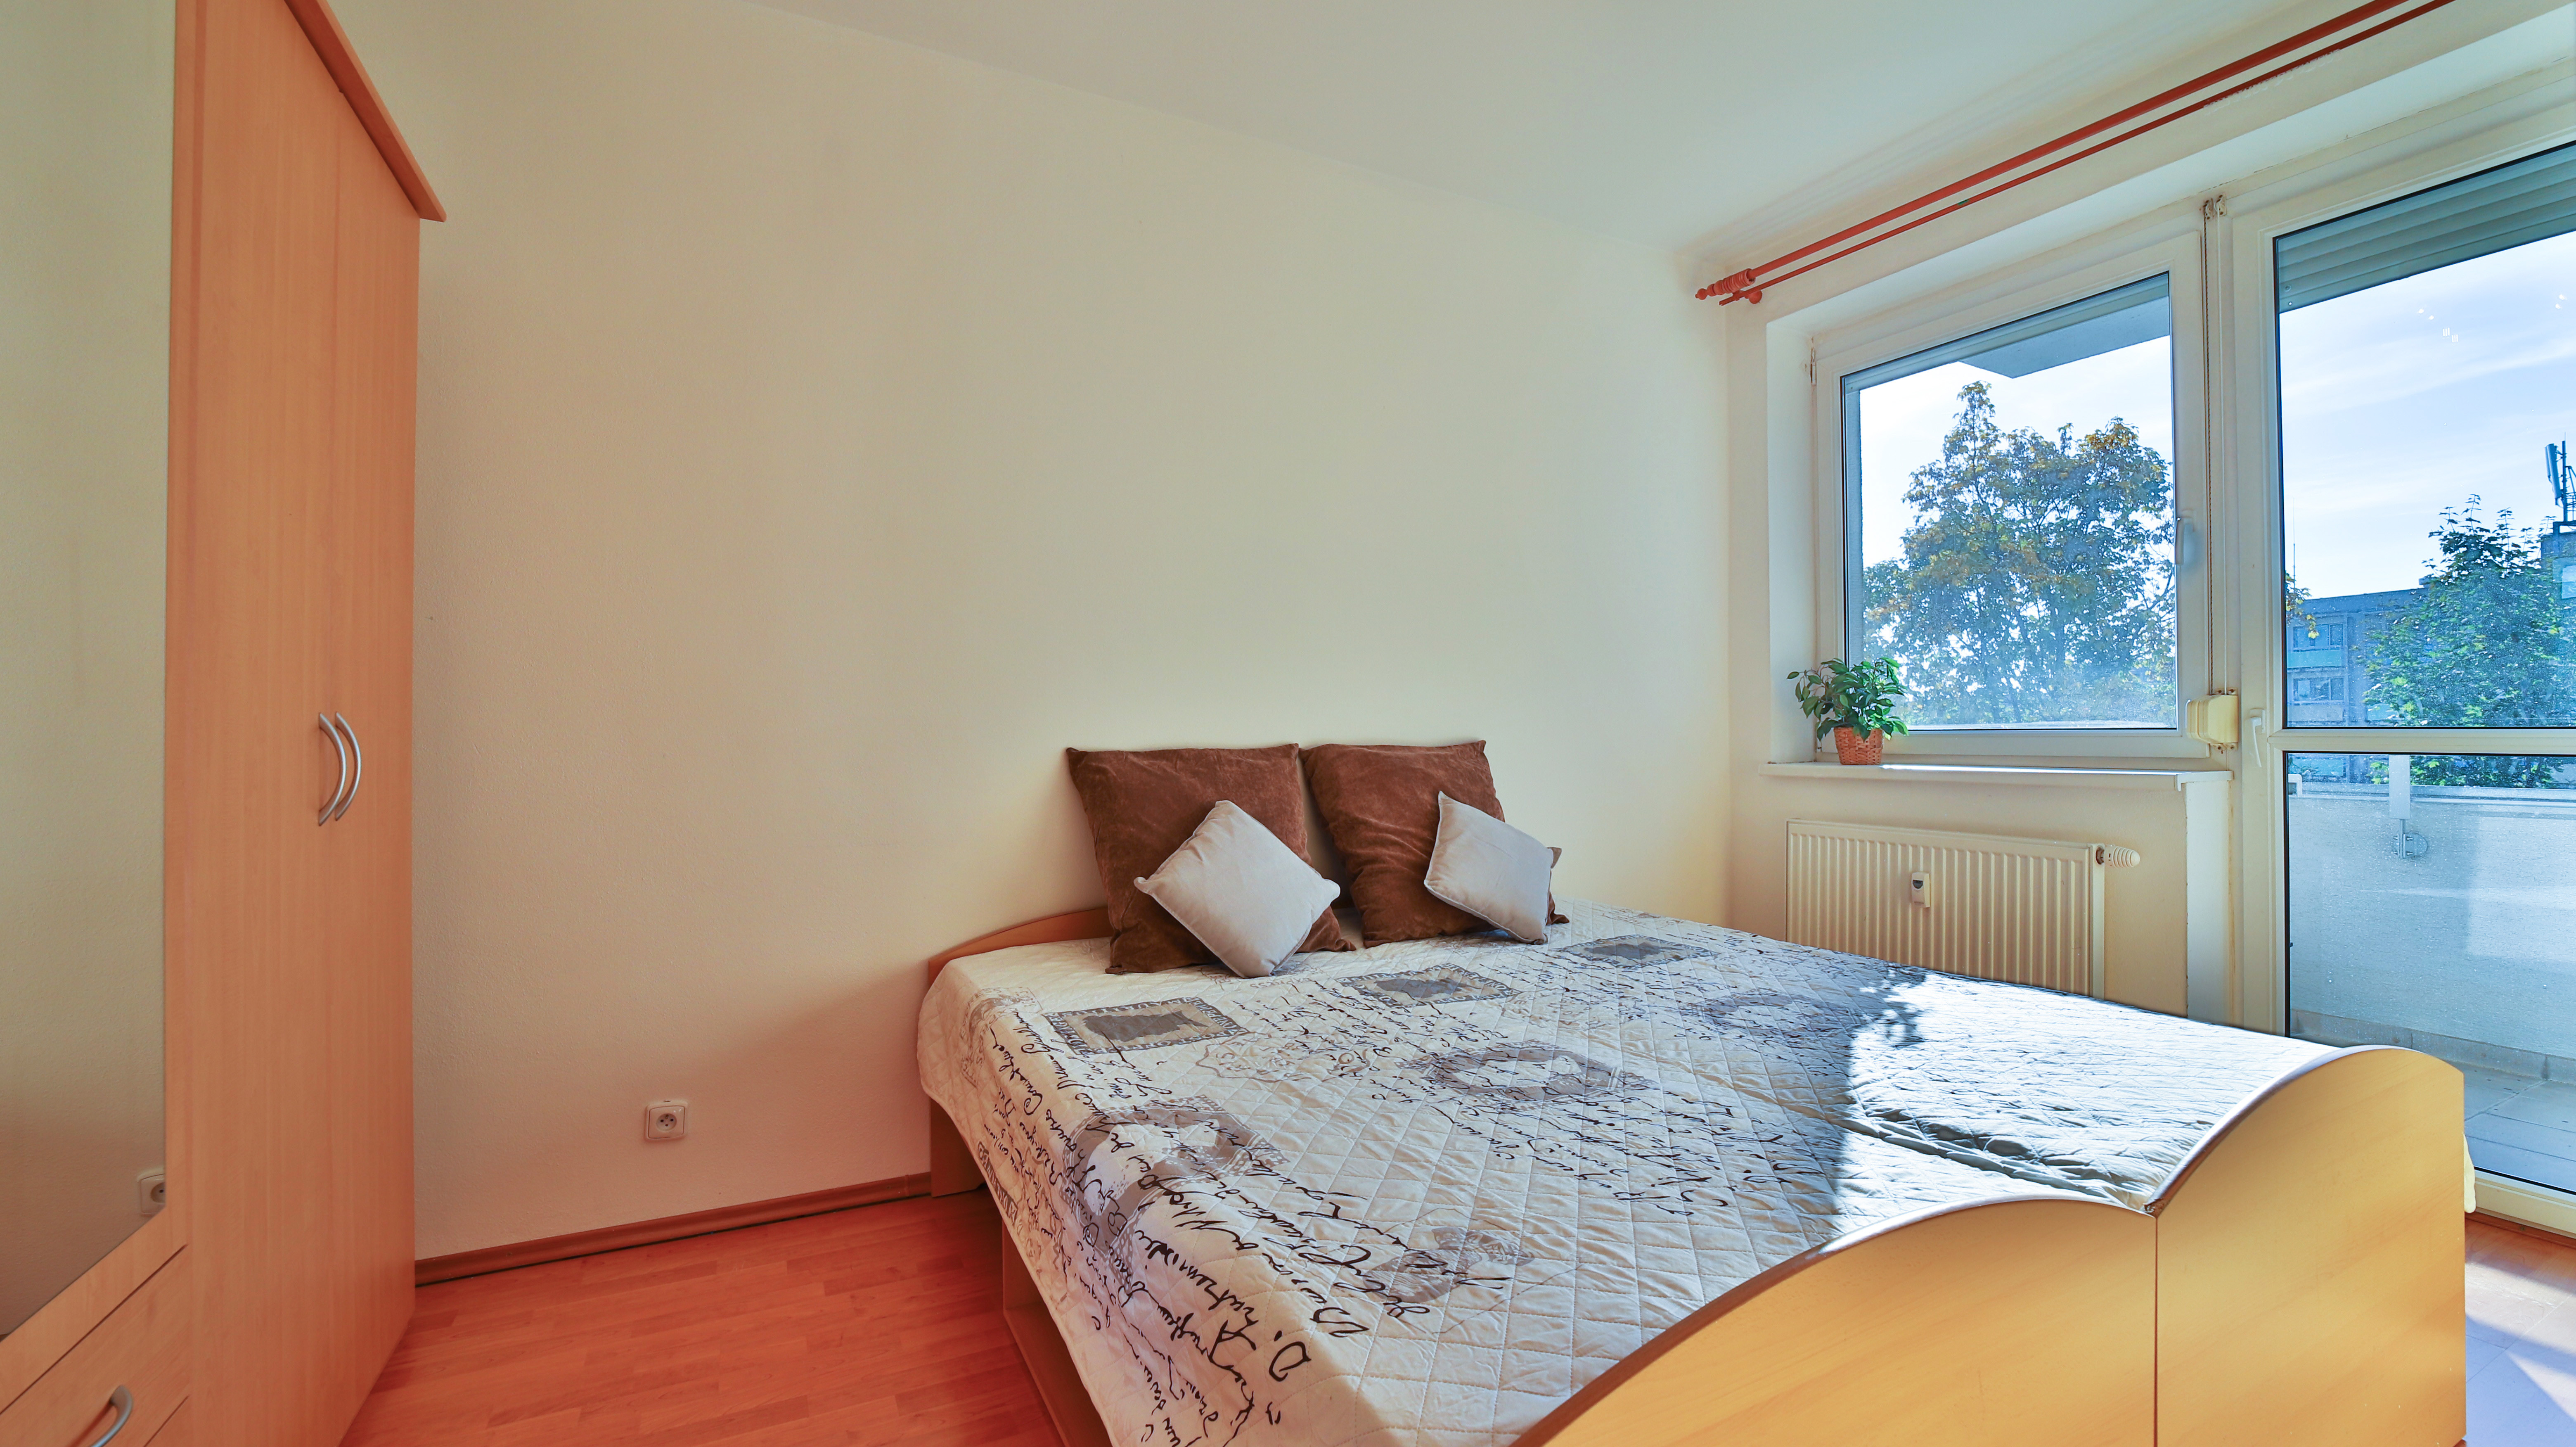 2-izbový byt na ul. Klenová, Bratislava - Kramáre